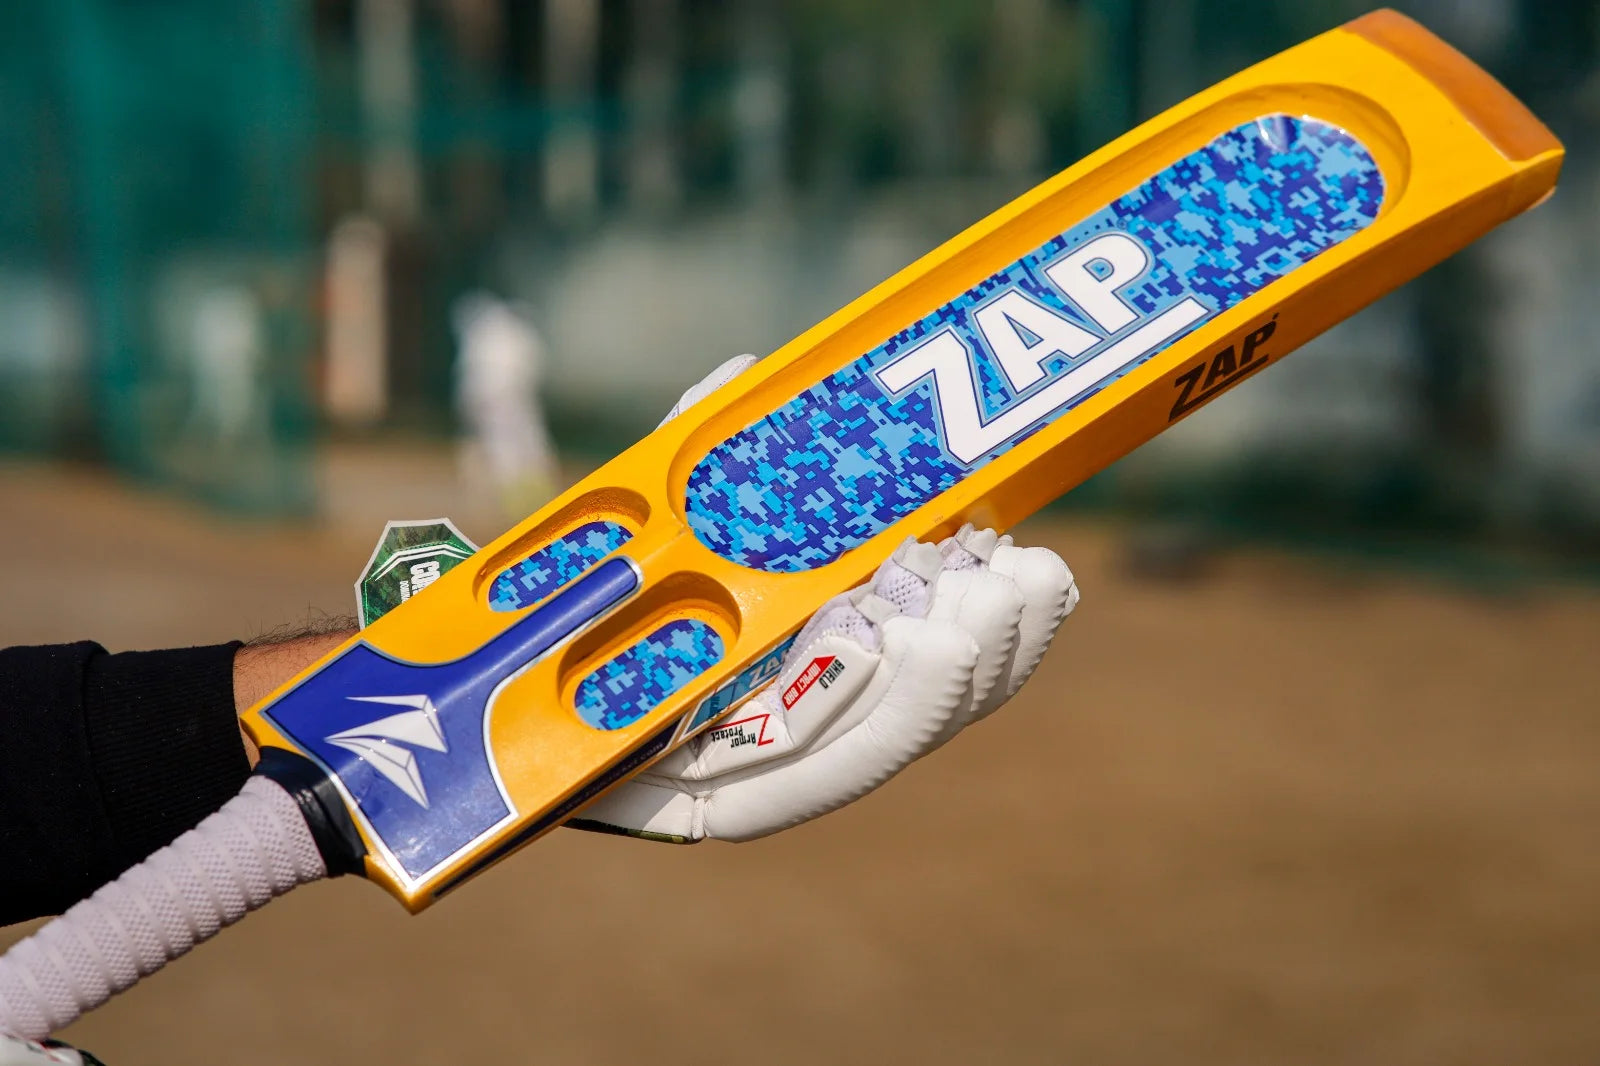 The Scoop Design of the ZAP Glaze Tennis Cricket Bat